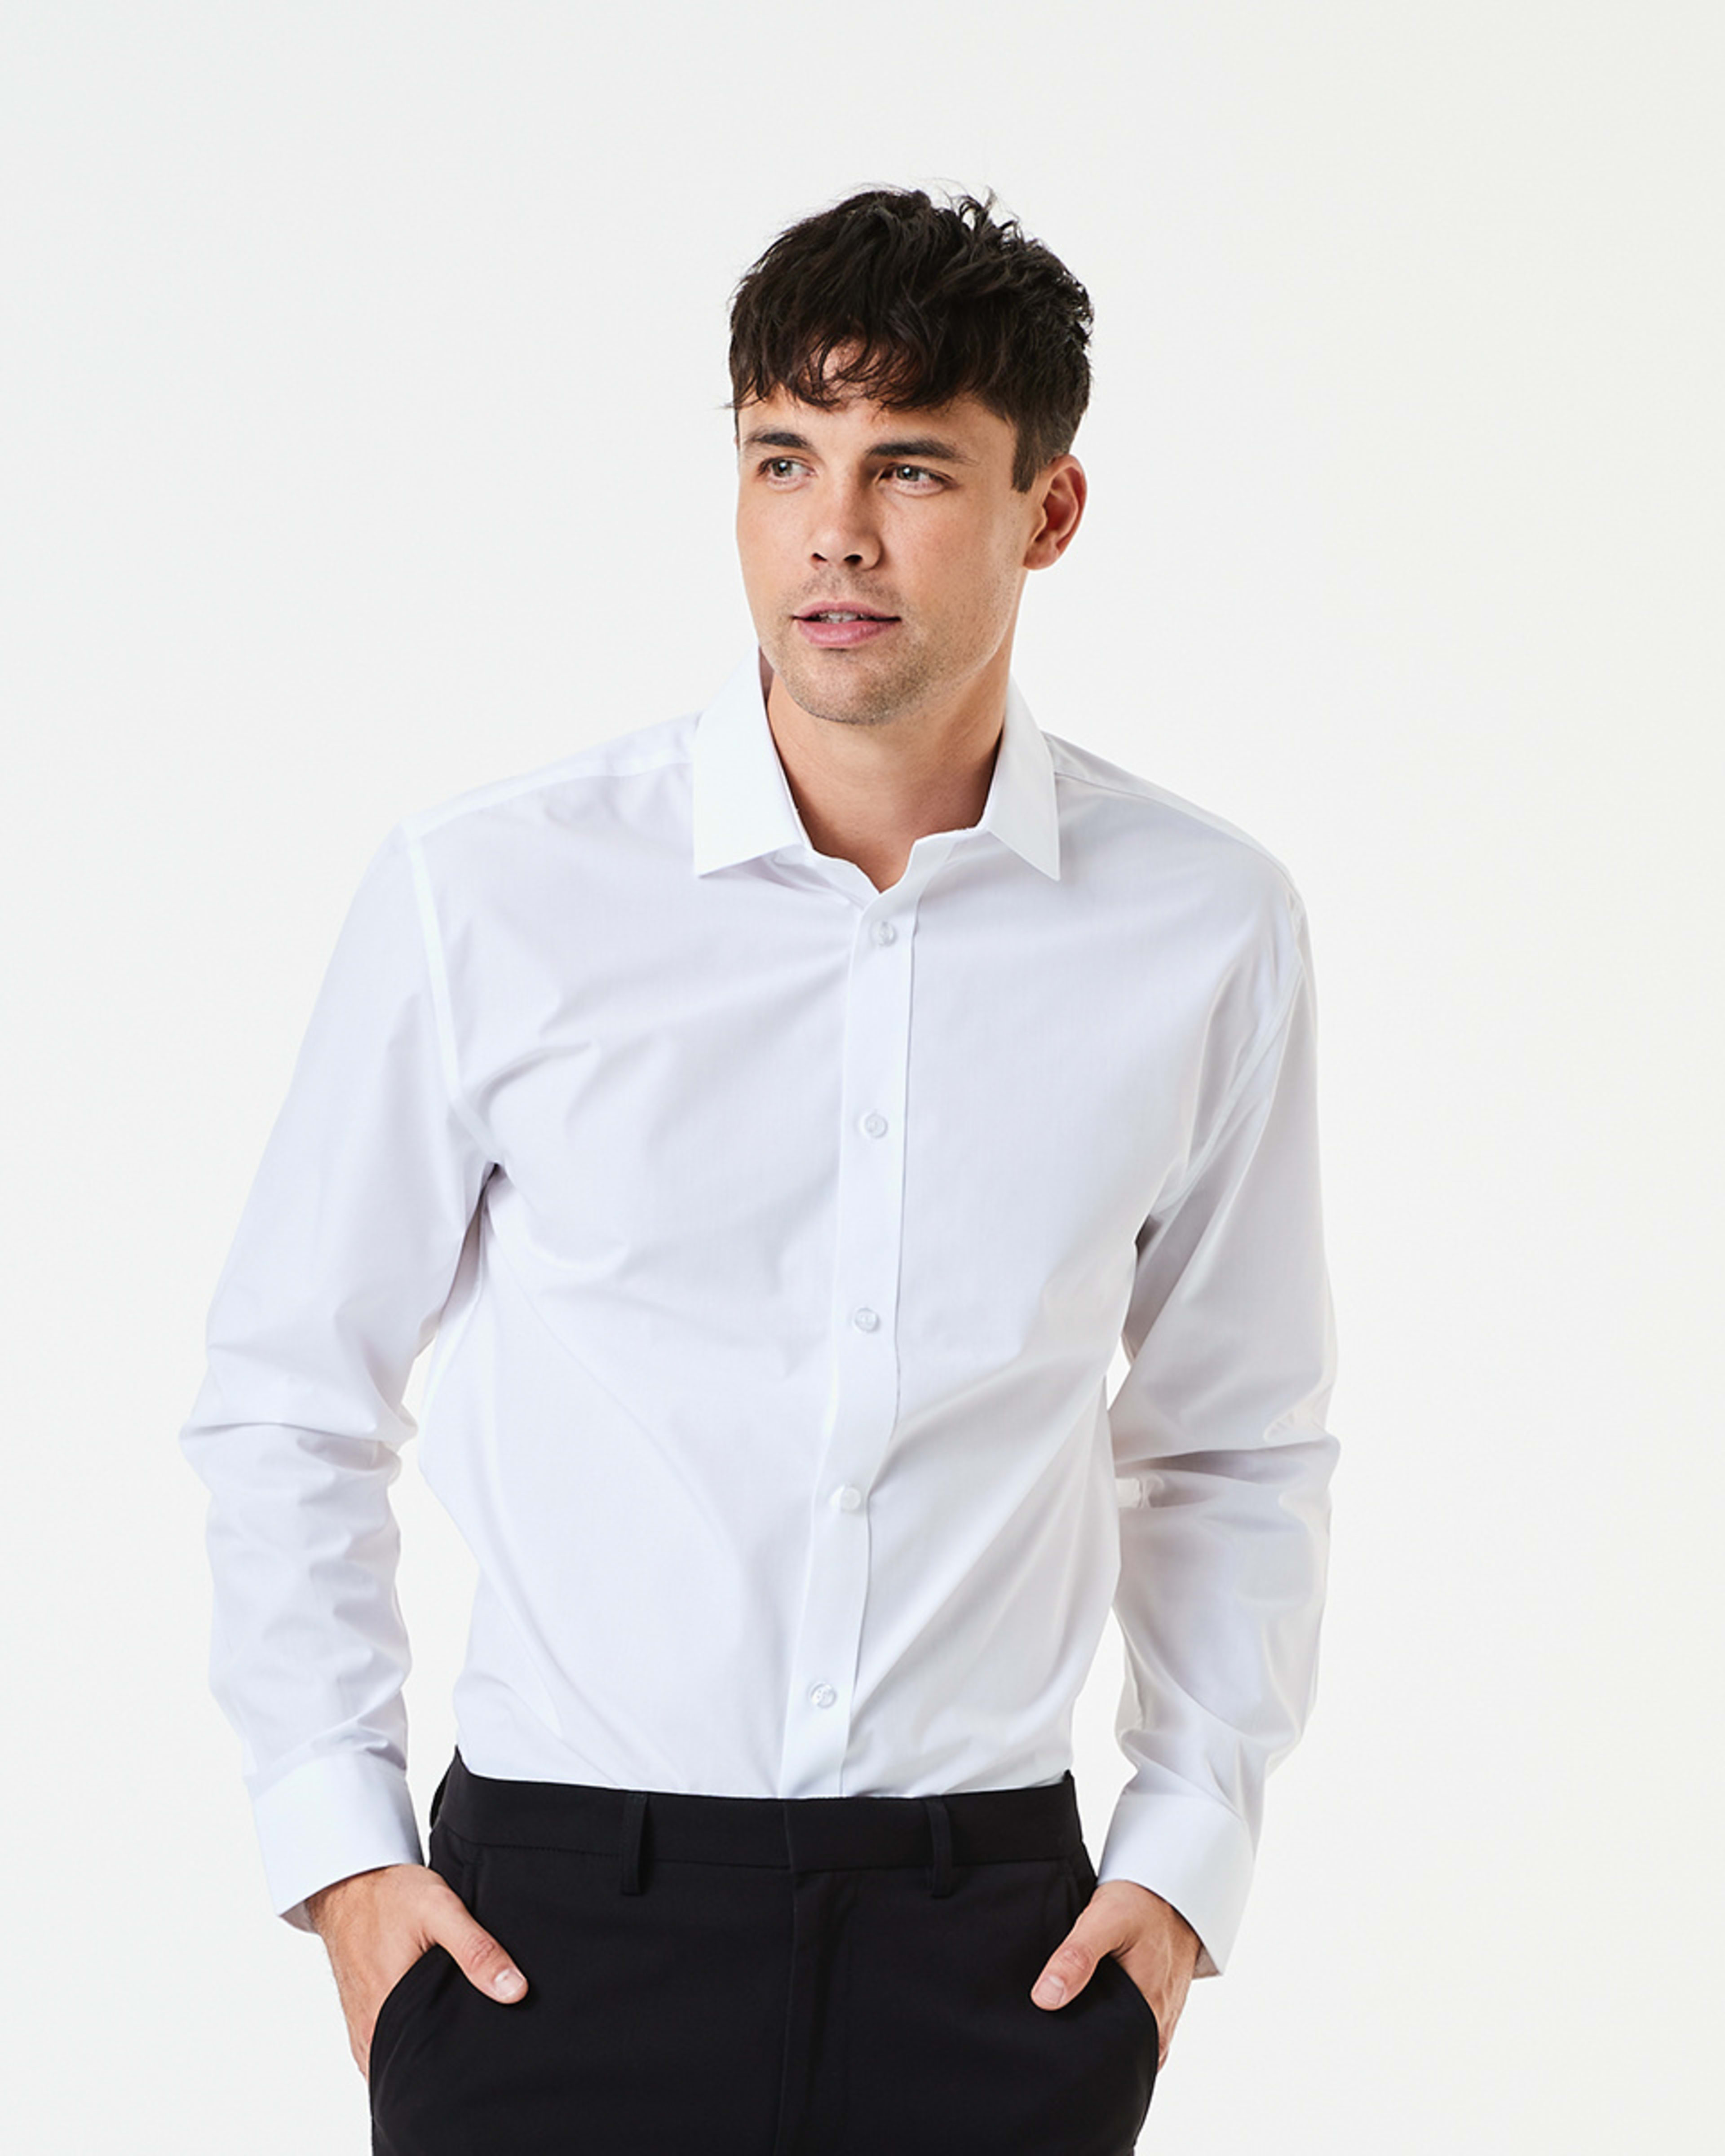 Workwear Long Sleeve Business Shirt - Kmart